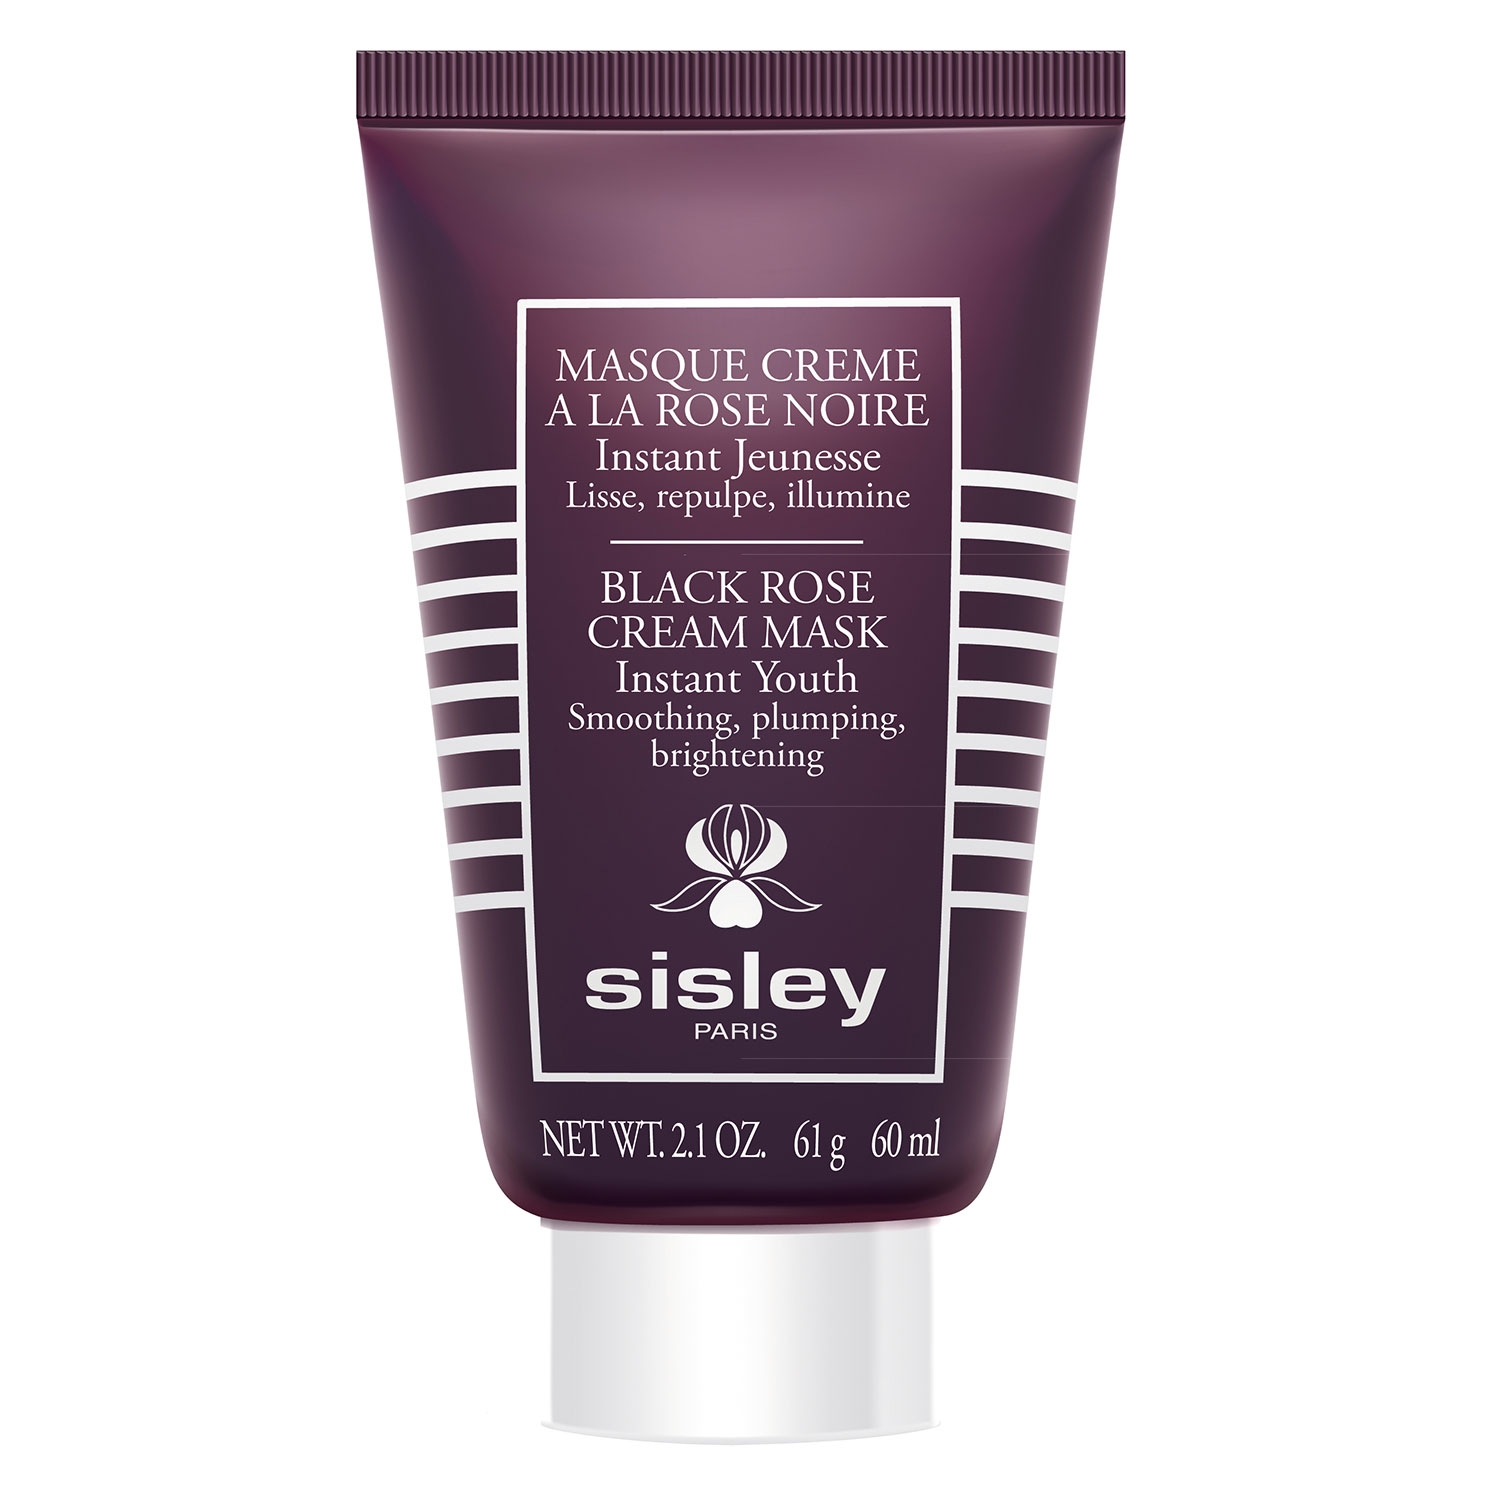 Product image from Rose Noire - Masque Crème à la Rose Noire